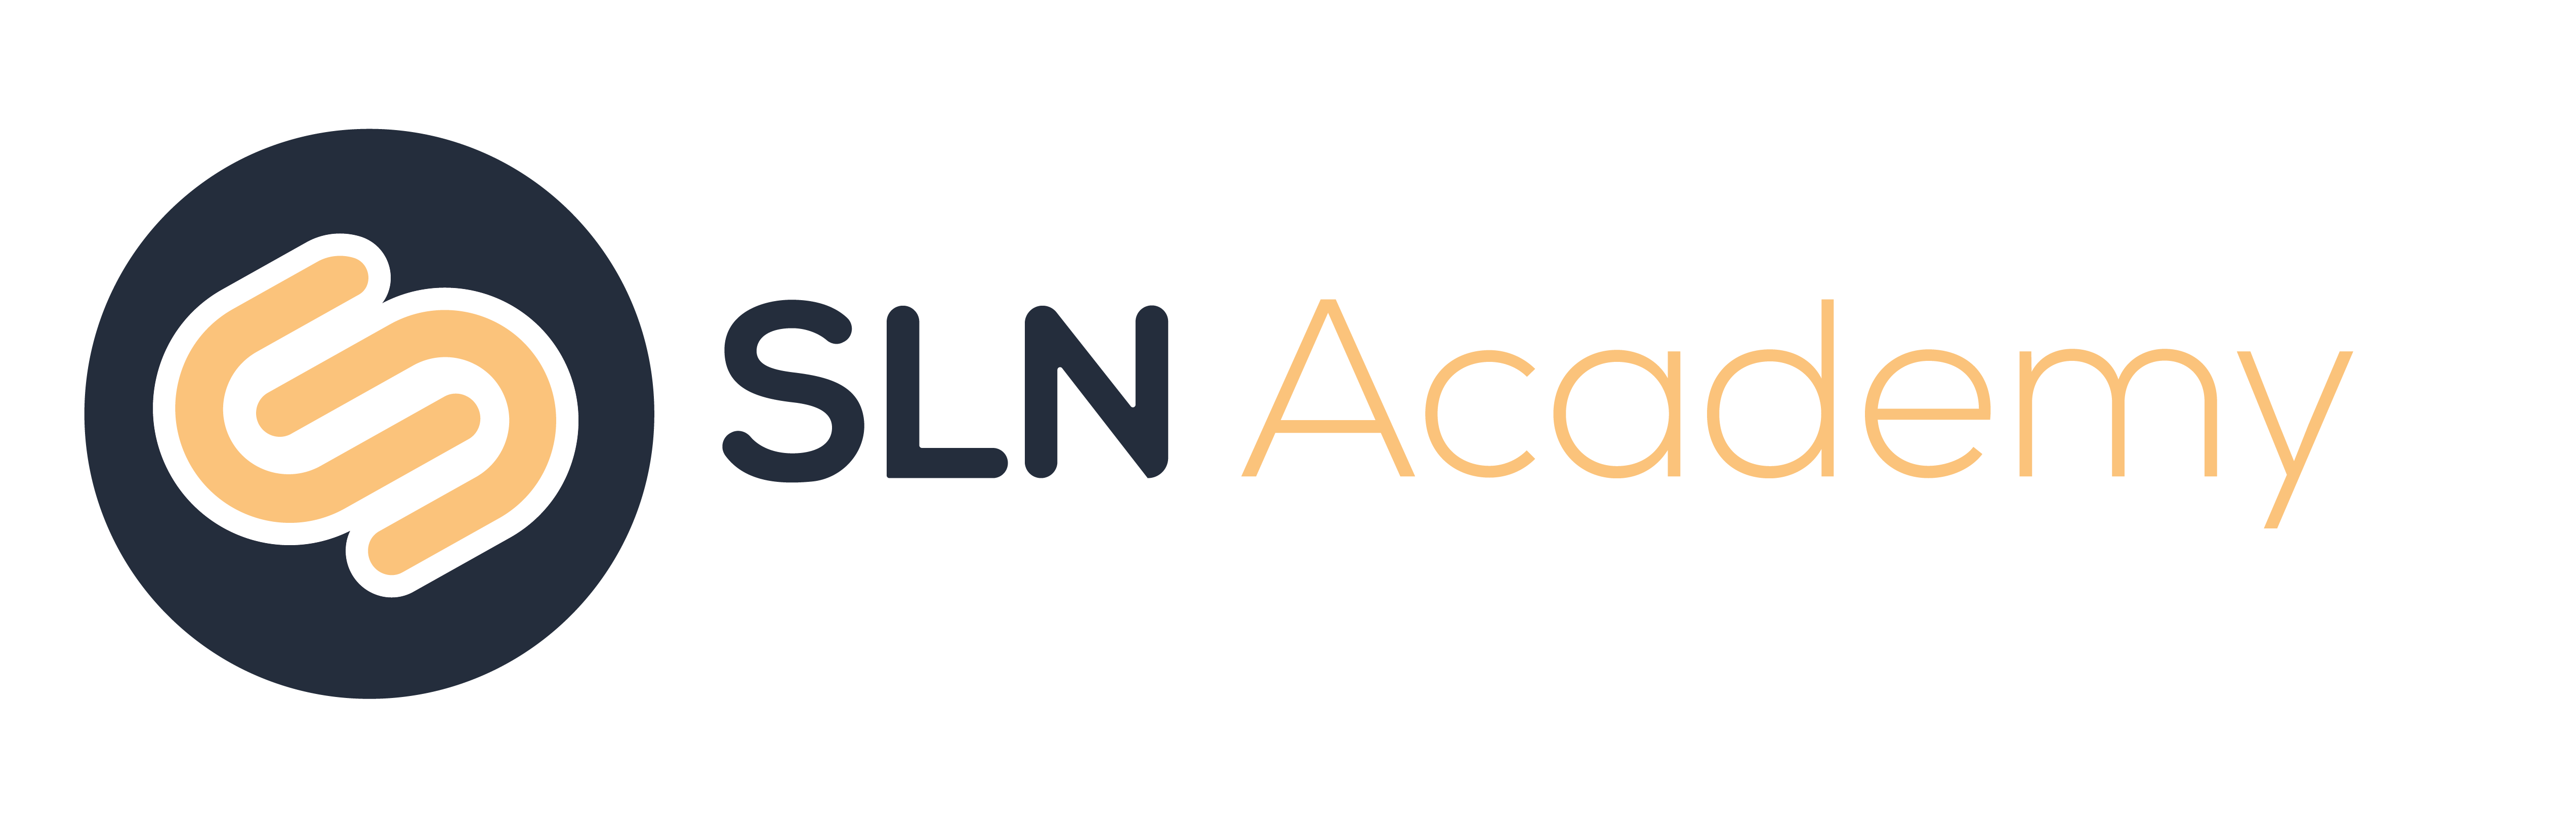 DET__Logo_SLN Academy Color